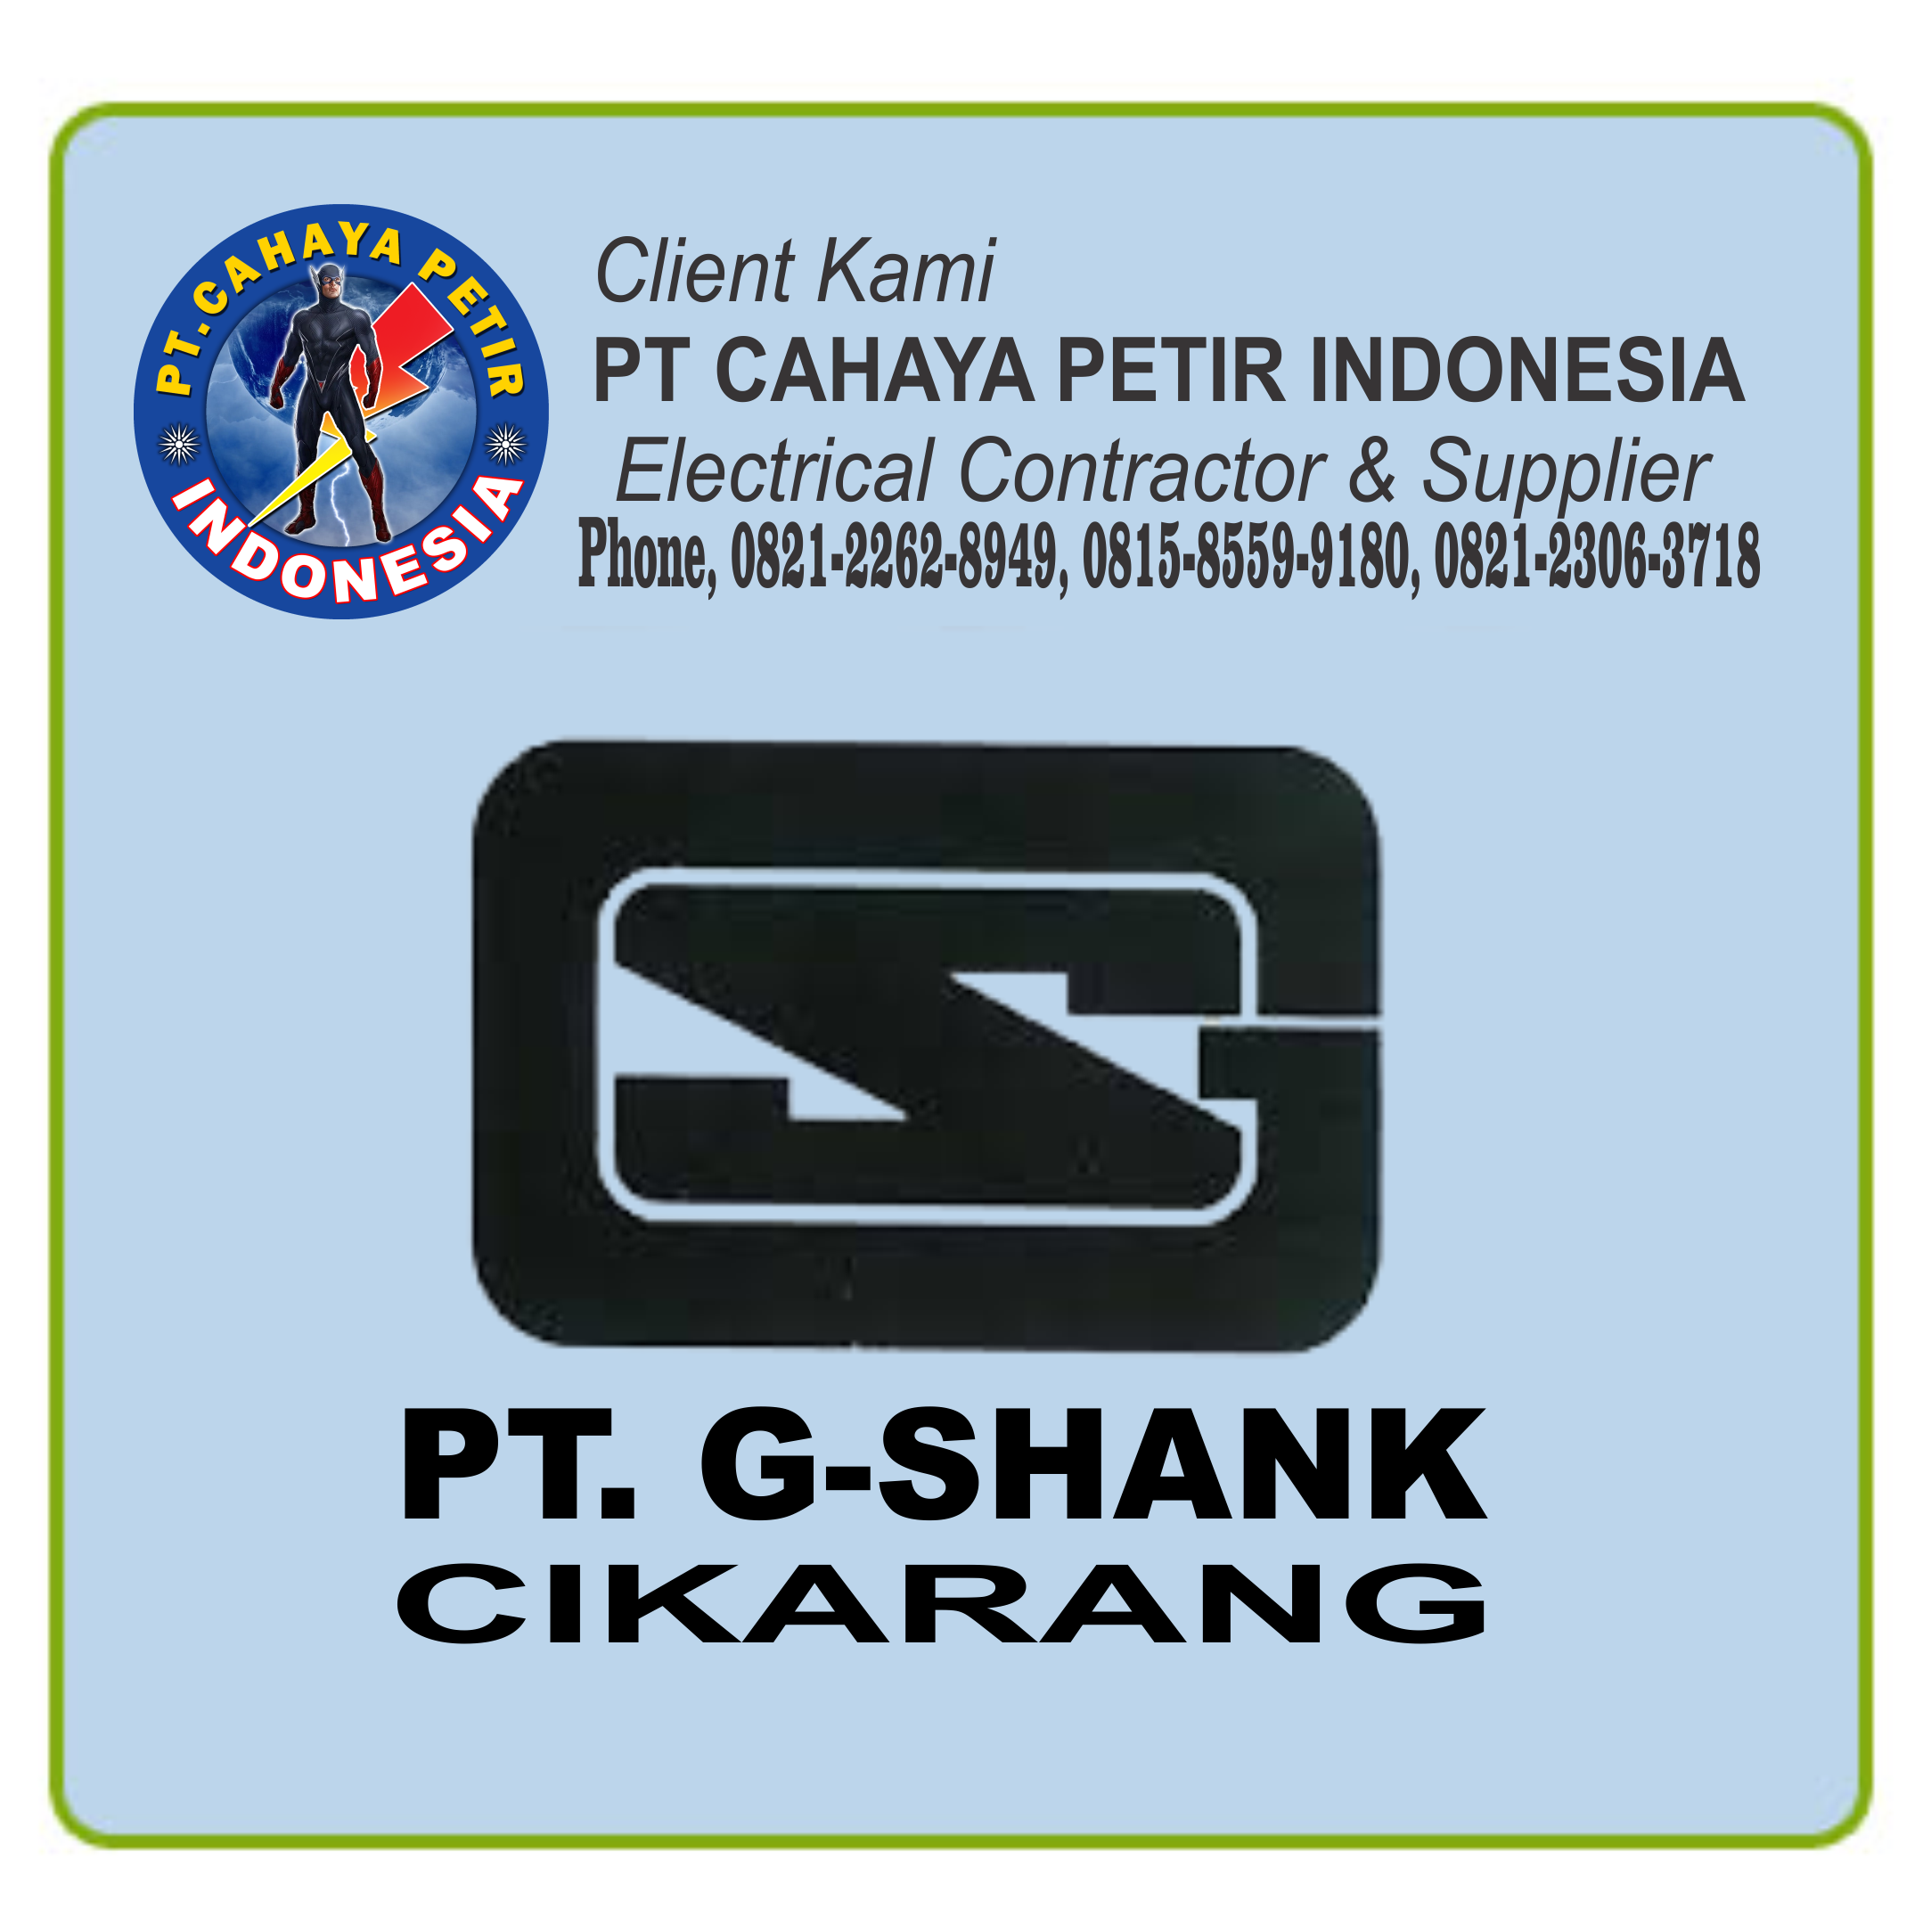 PT G-SHANK